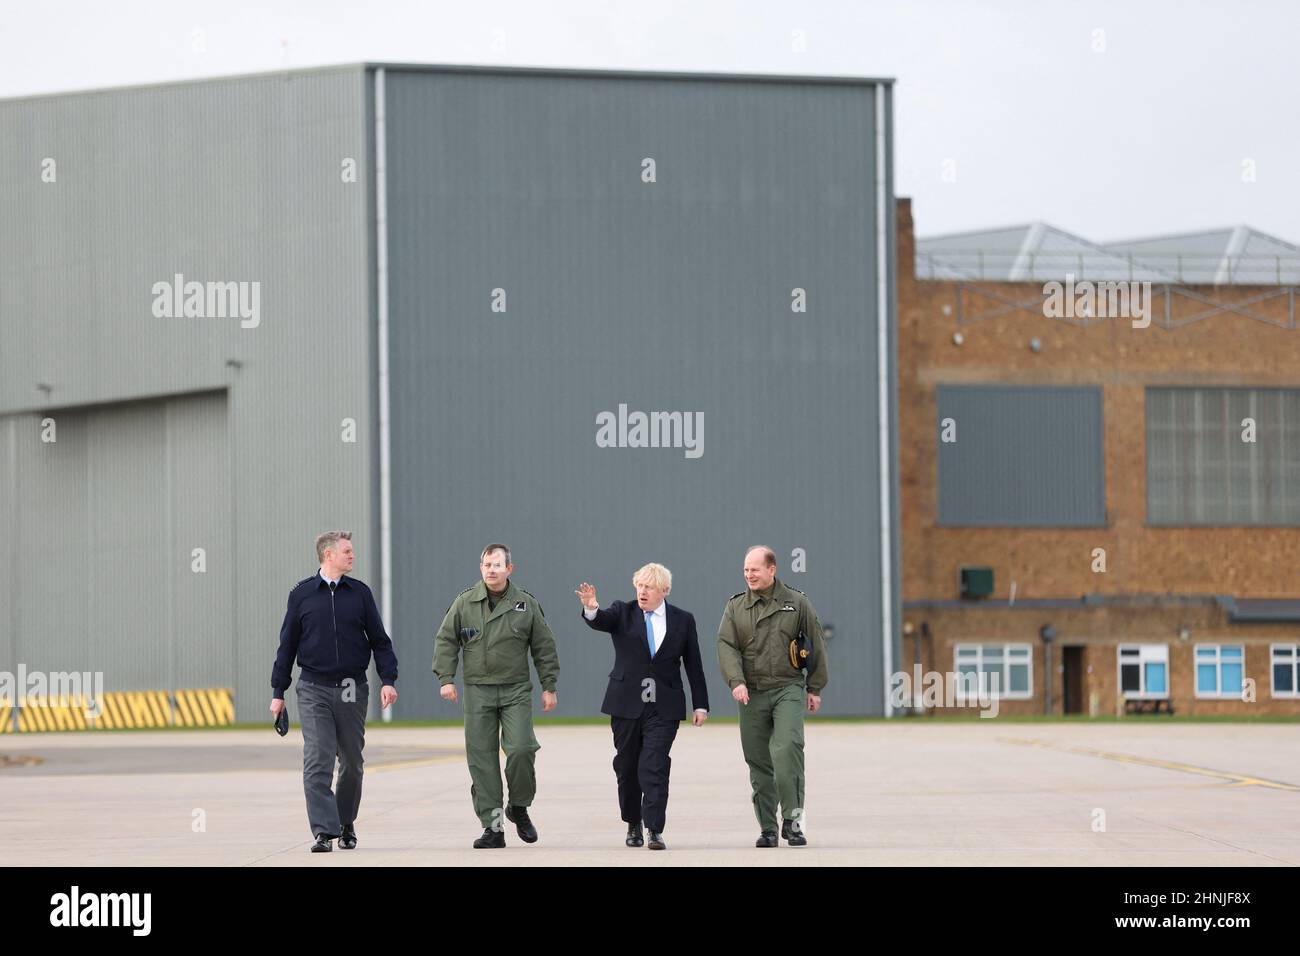 Il primo Ministro Boris Johnson durante la sua visita alla Royal Air Force Station di Waddington nel Lincolnshire dove ha incontrato personale militare. Data immagine: Giovedì 17 febbraio 2022. Foto Stock